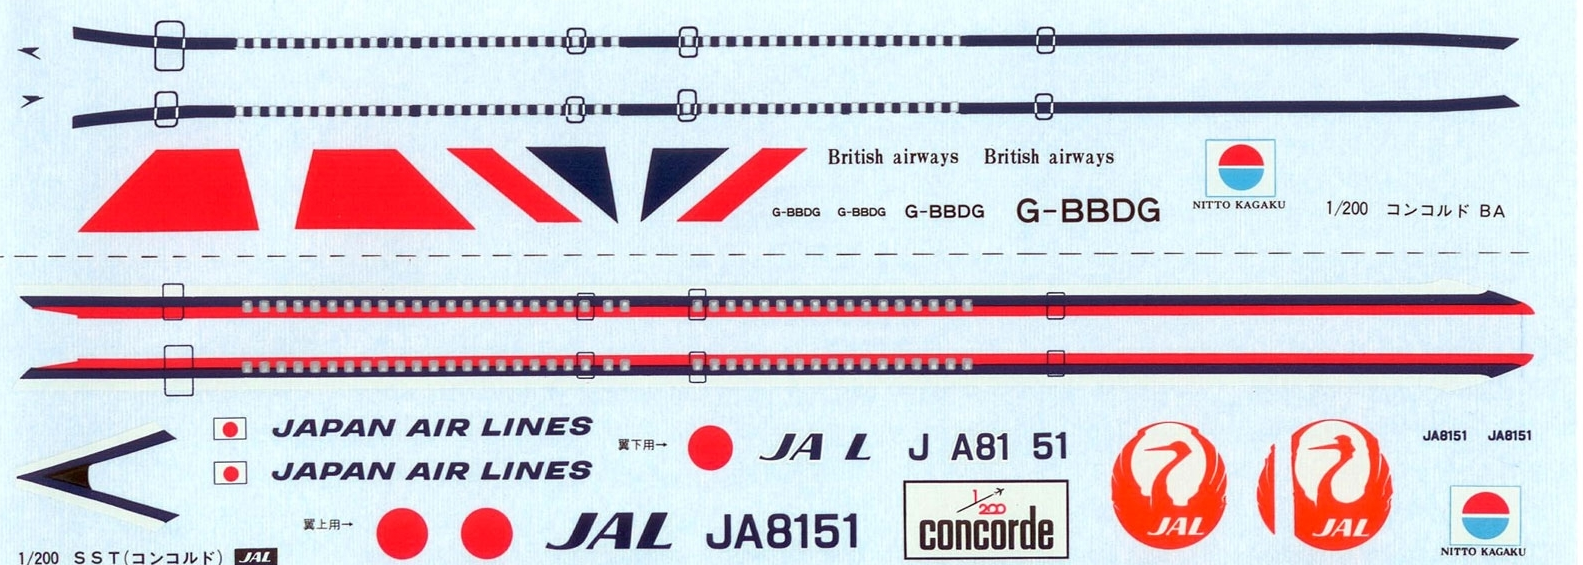 NI492 JAL & BA CONCORDE